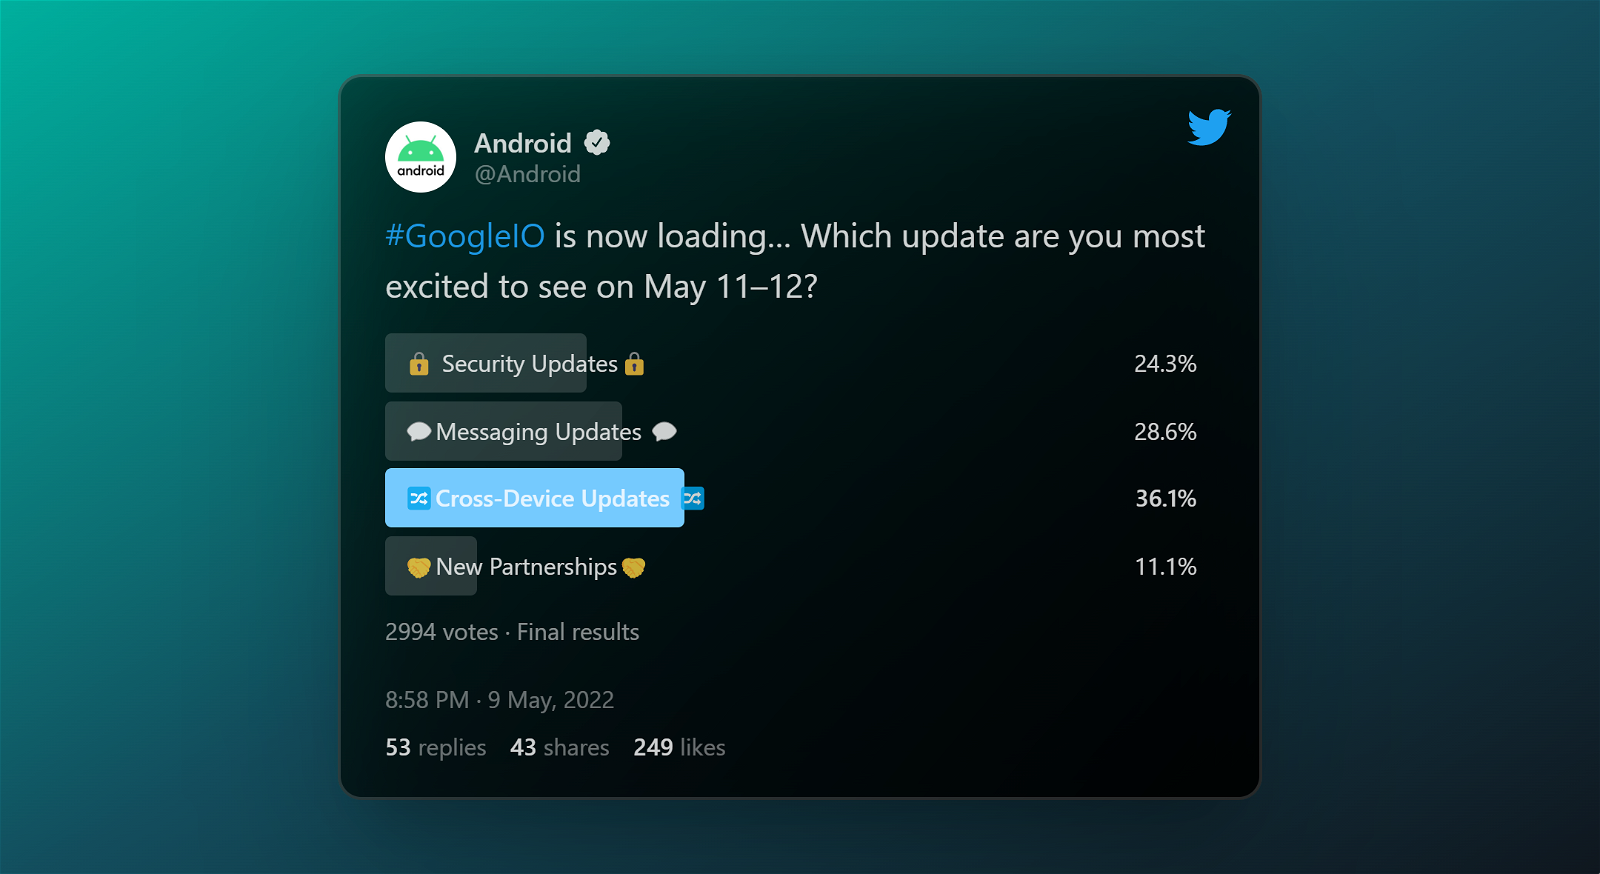 Tweet de Android que muestra las novedades que se anunciarán en Google I/O 2022